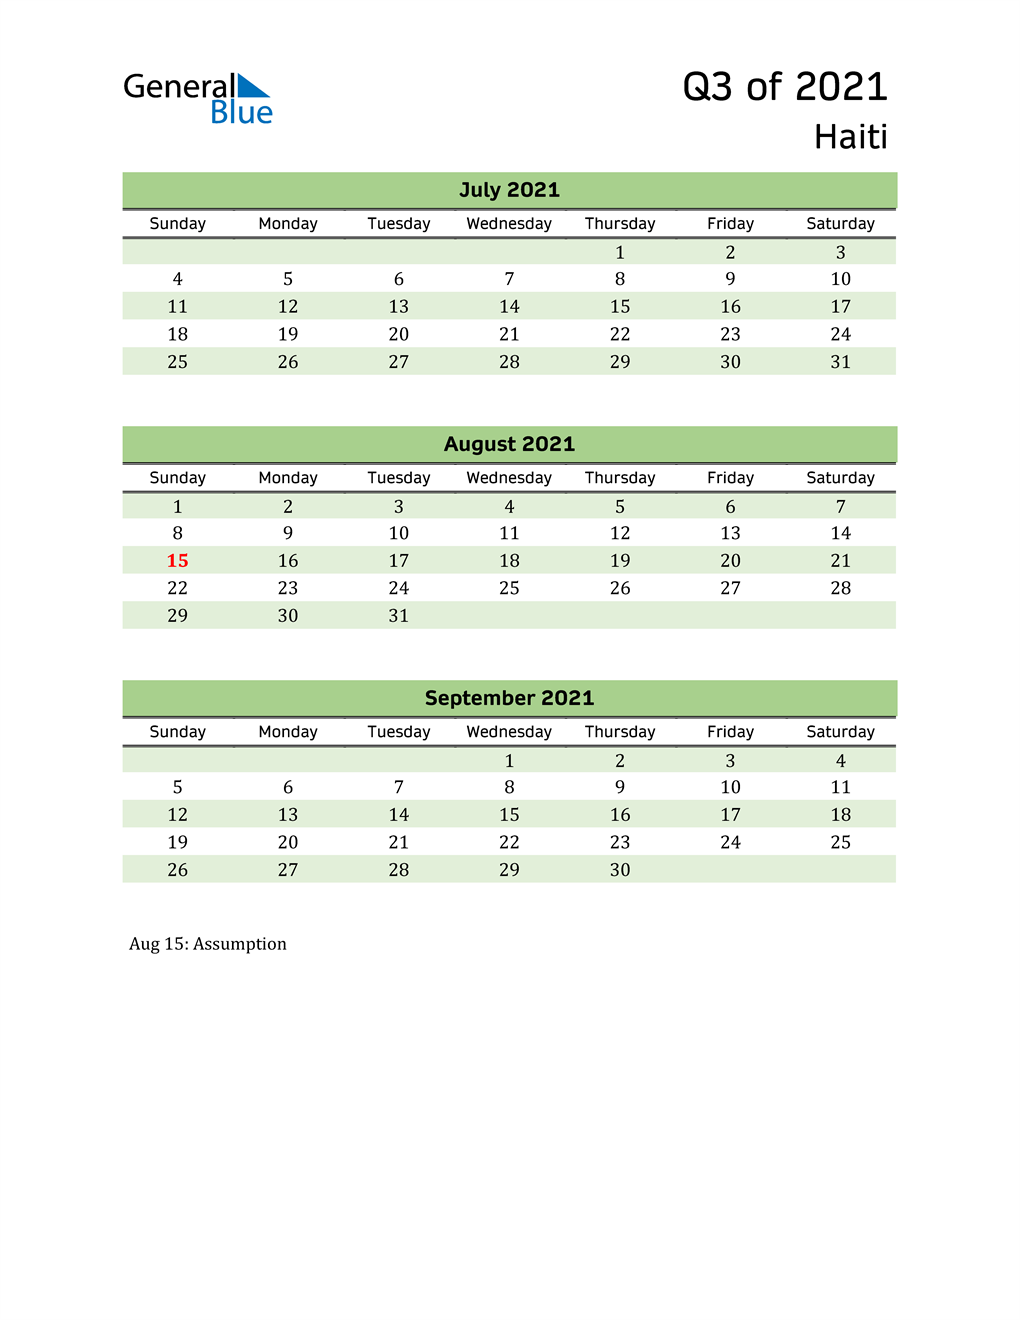  Quarterly Calendar 2021 with Haiti Holidays 